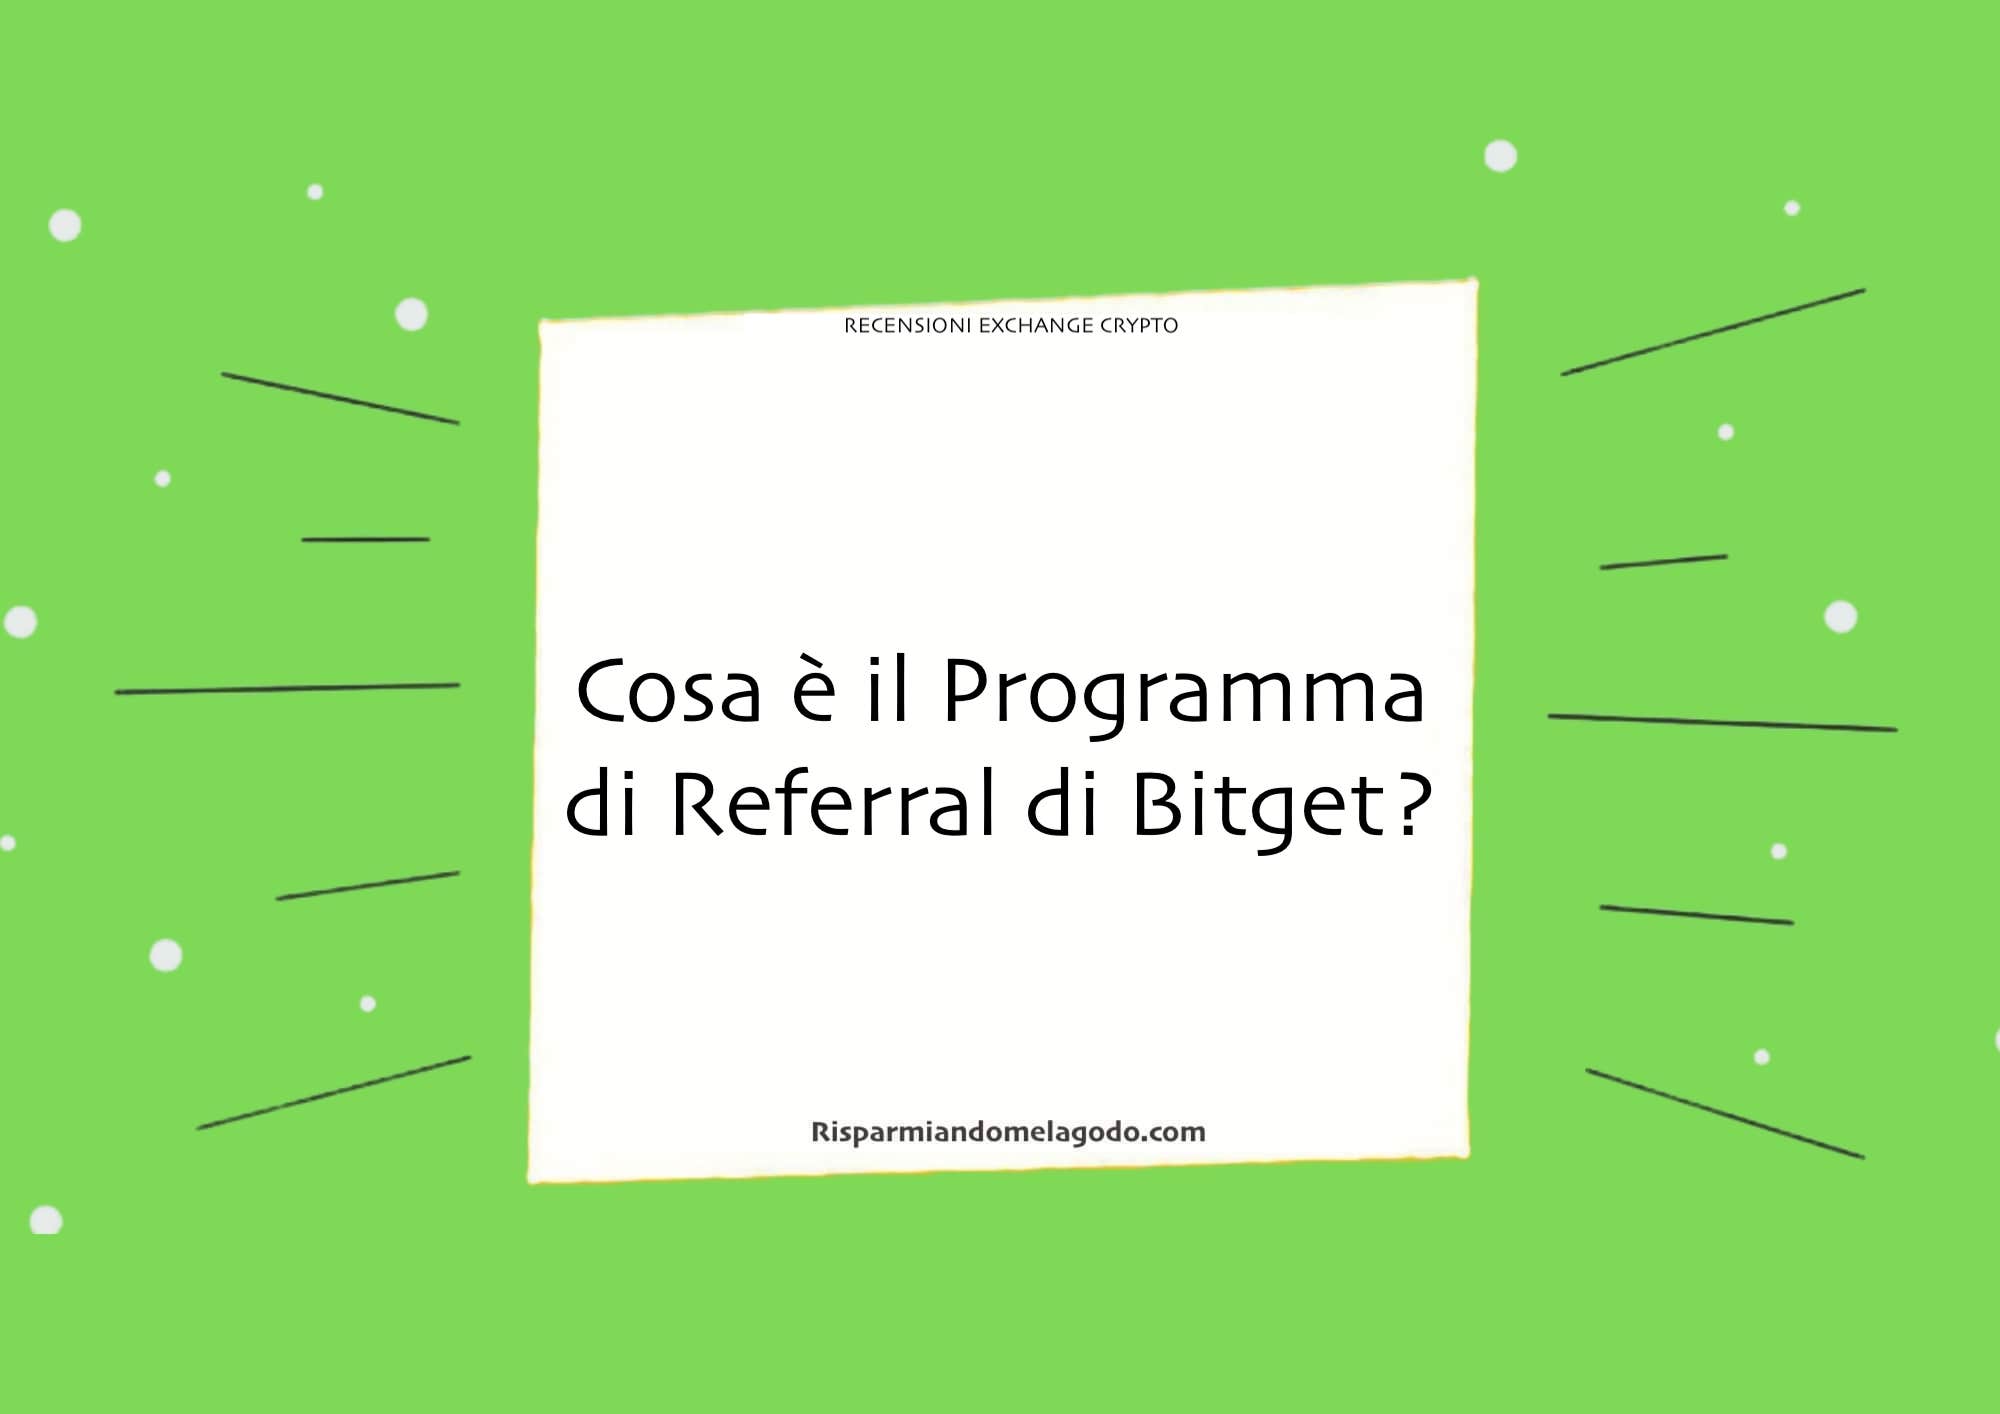 Cosa è il Programma di Referral di Bitget?